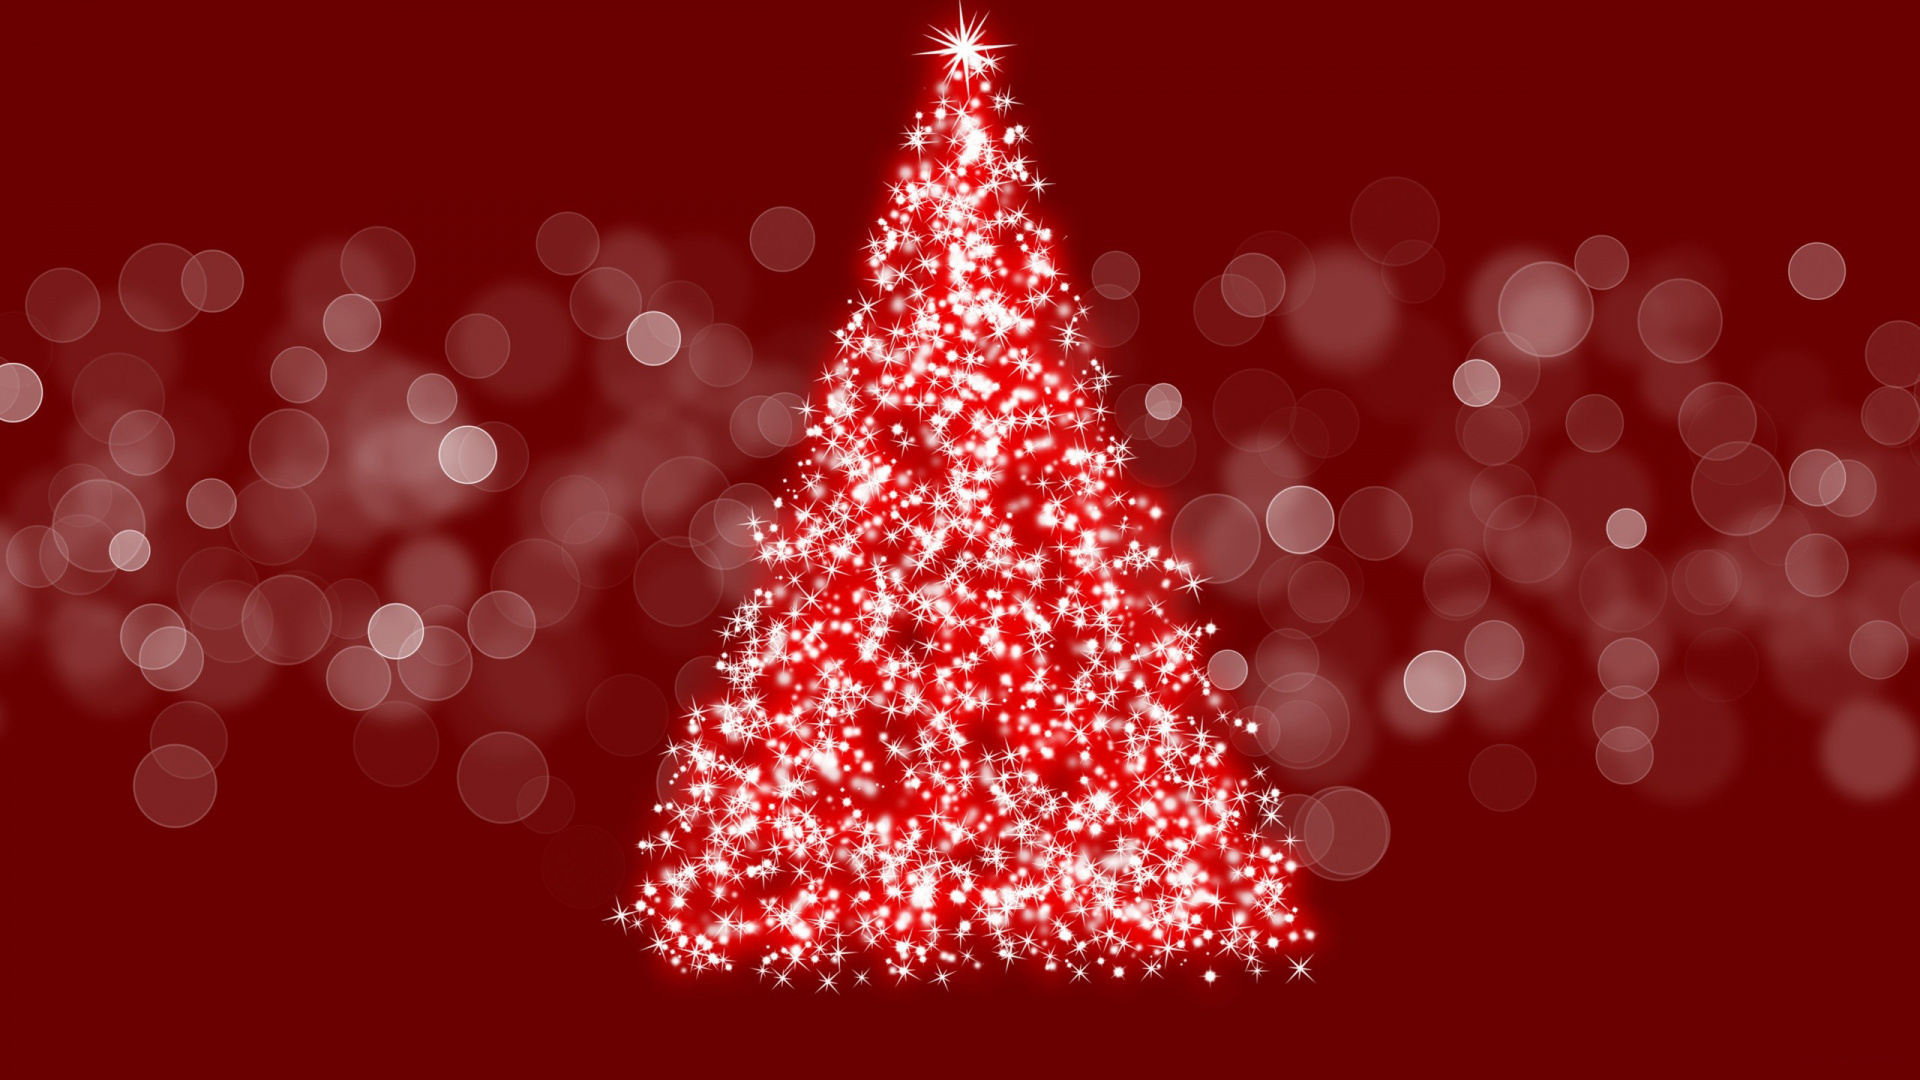 El Día De Navidad, Decoración de la Navidad, Adorno de Navidad, Navidad, la Navidad y la Temporada de Vacaciones. Wallpaper in 1920x1080 Resolution